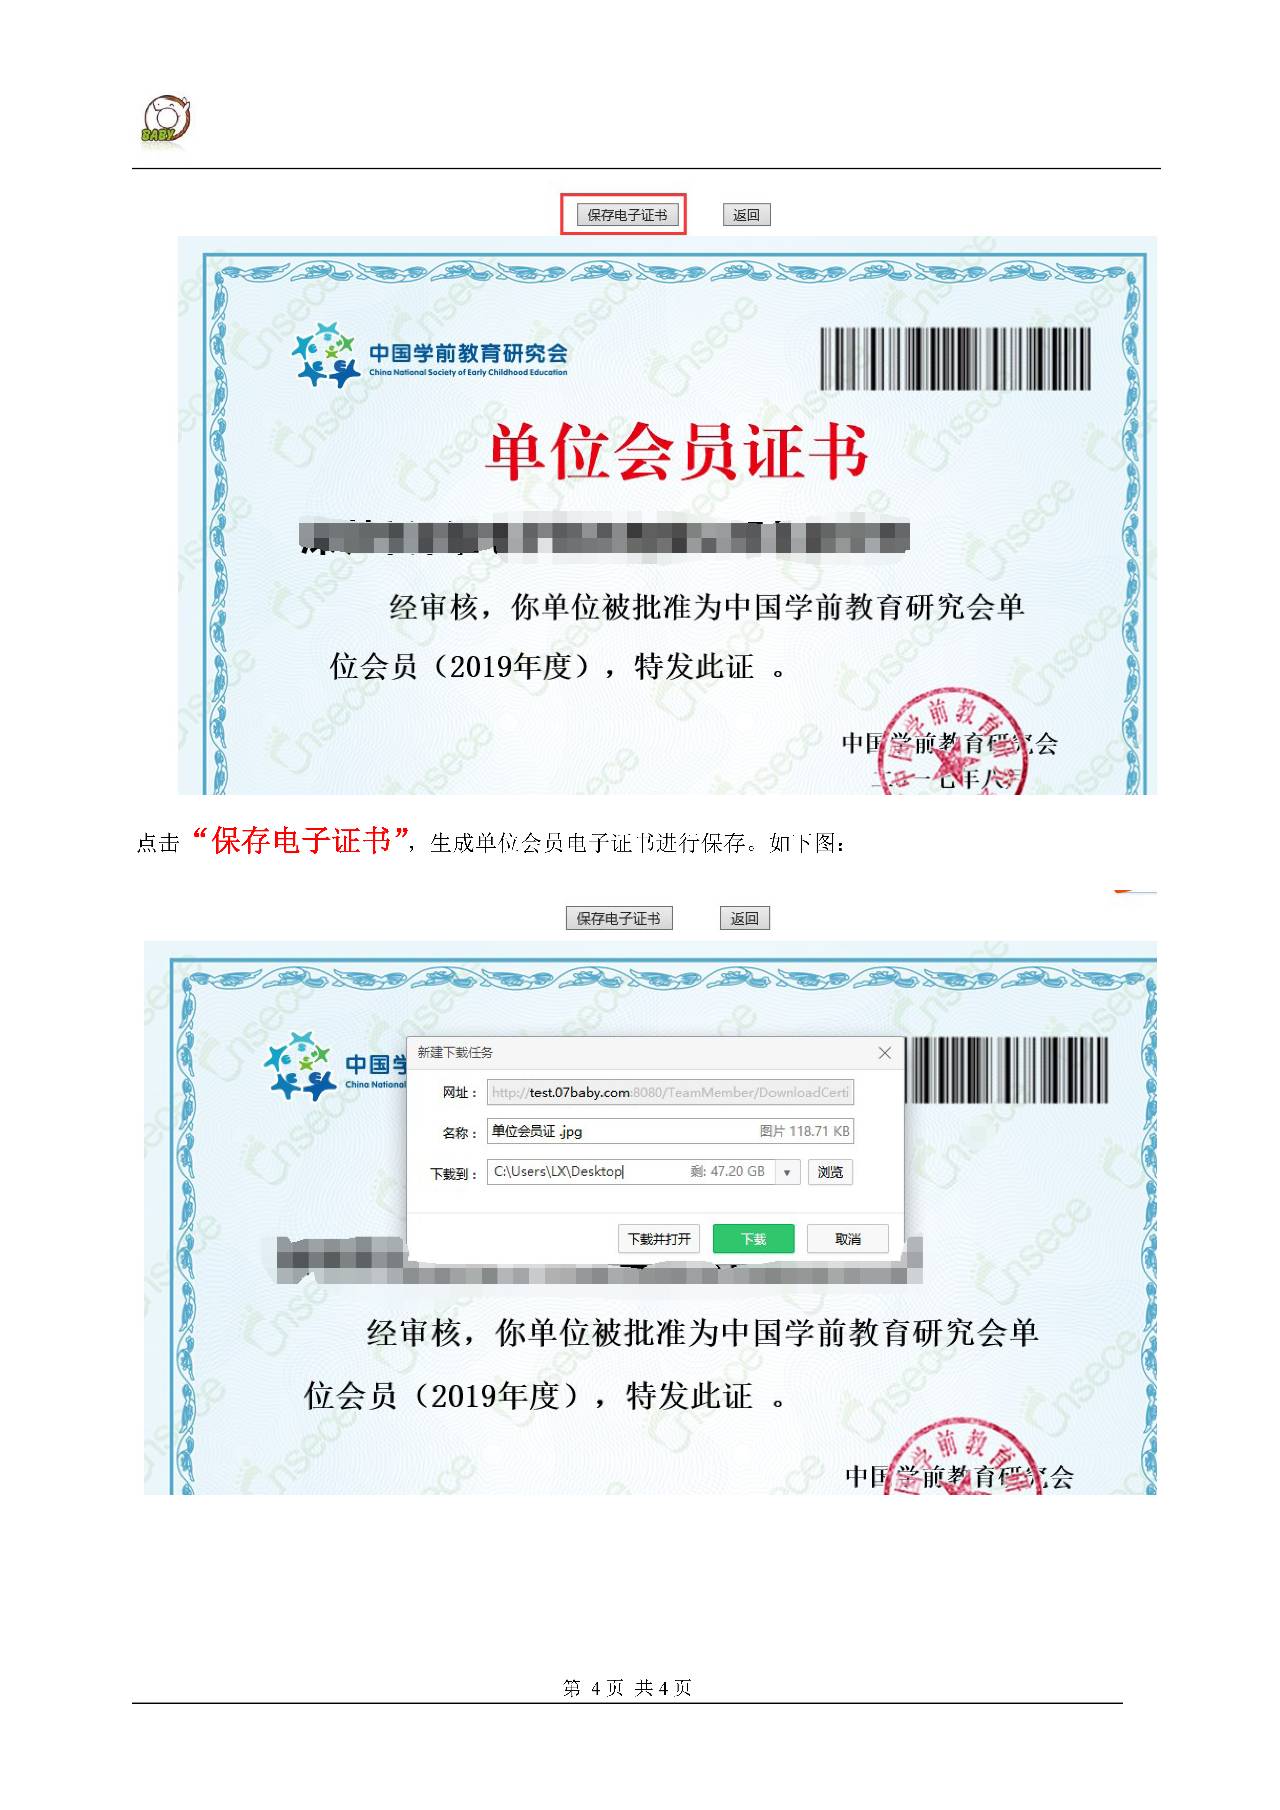 中国学前教育研究会单位会员电子证书打印操作说明